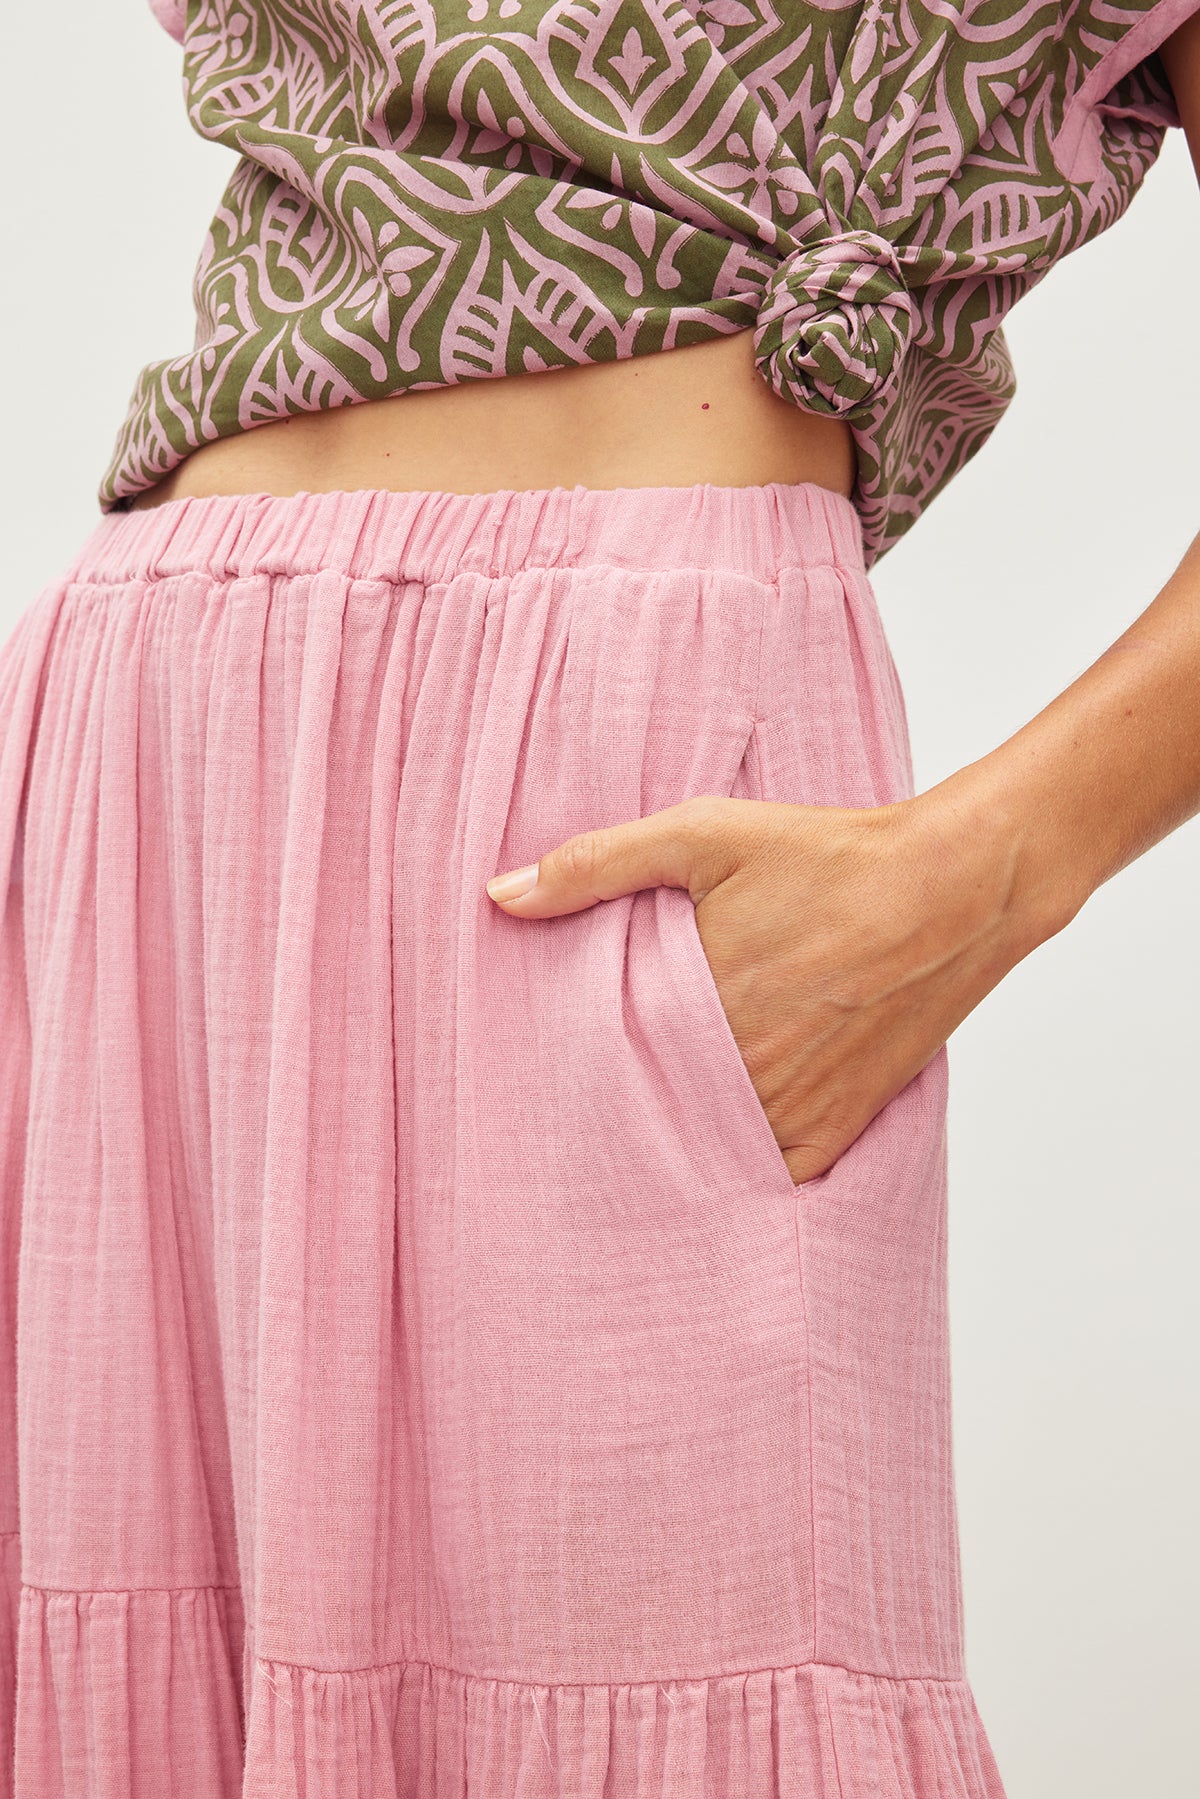 Story of Us Pink Lace Ruffle Skirt